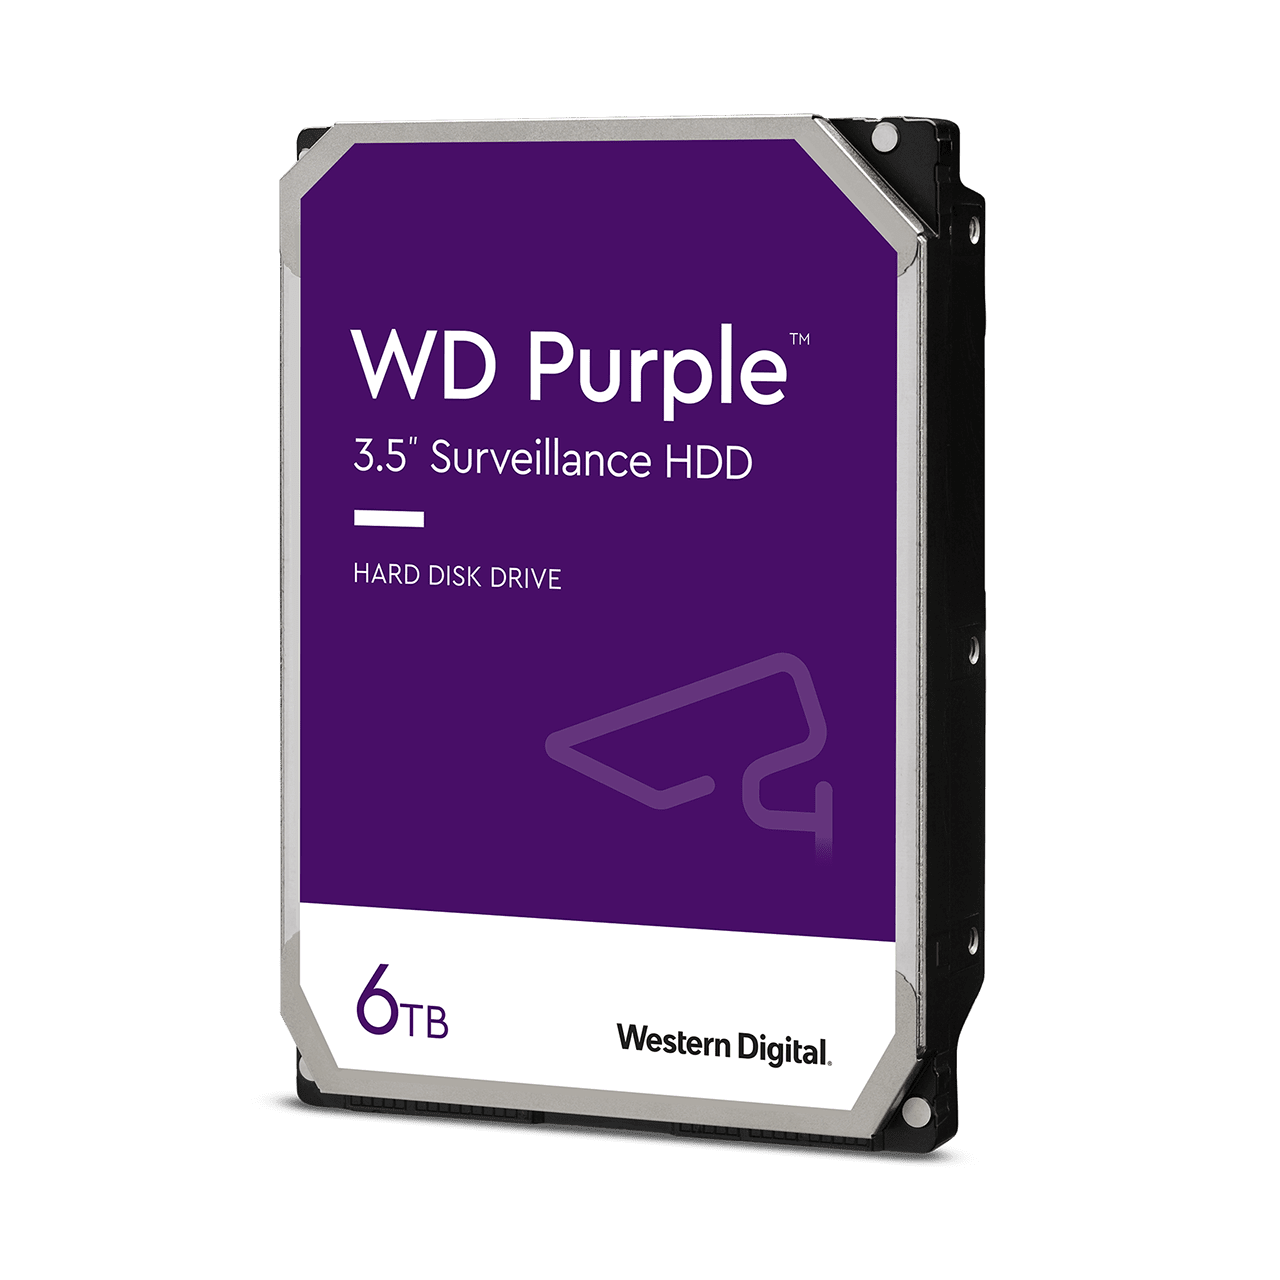 WD Purple 6TB 5400rpm 256MB 3.5" Surveillance HDD (WD64PURZ)